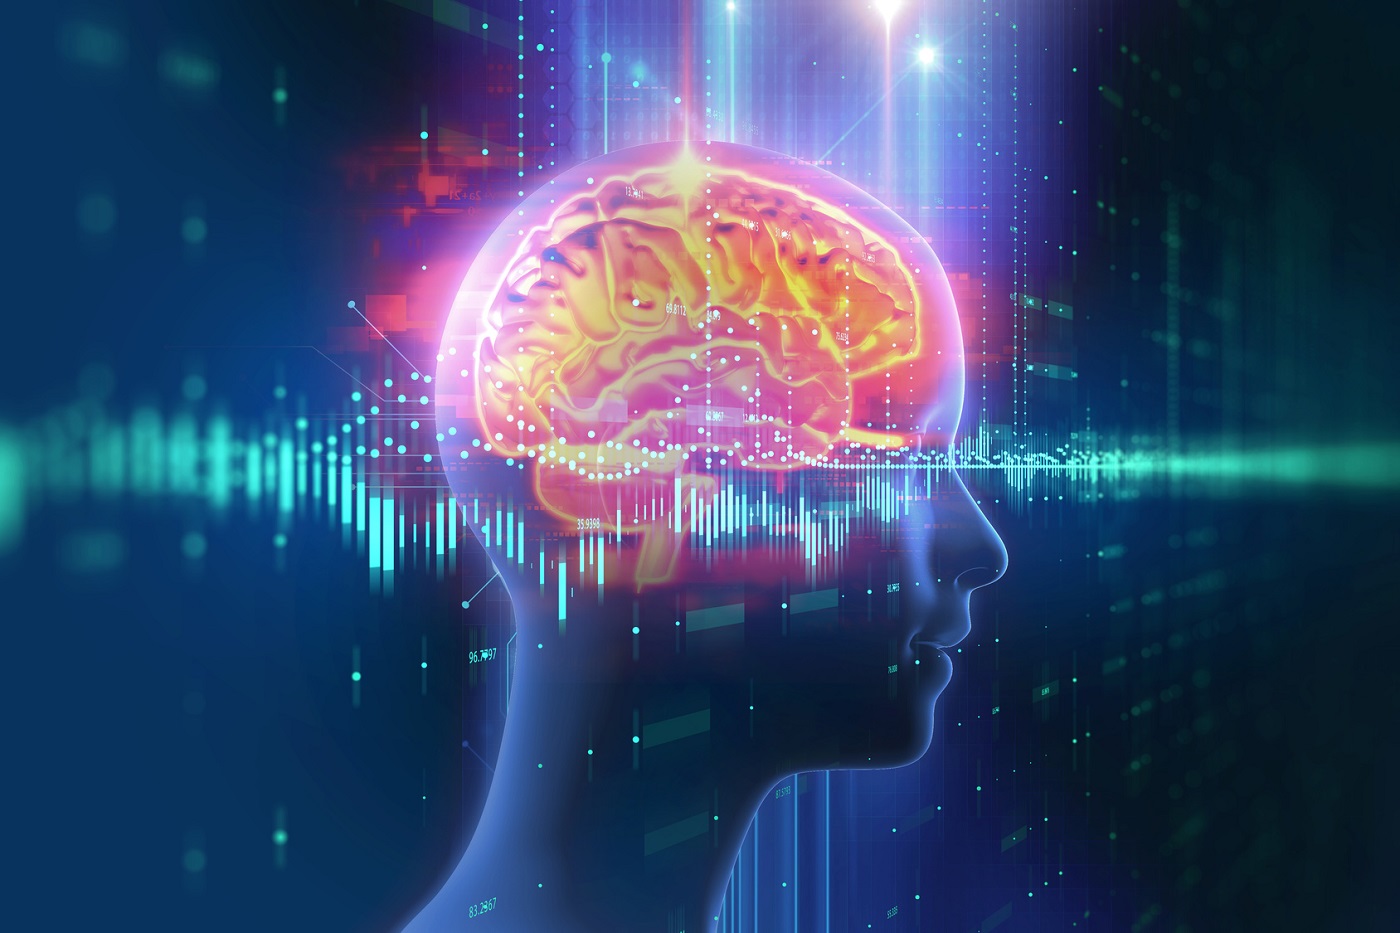 الدوبامين ناقل عصبي أساسي له عدة وظائف مثل حمل الإشارات العصبية بين خلايا المخ